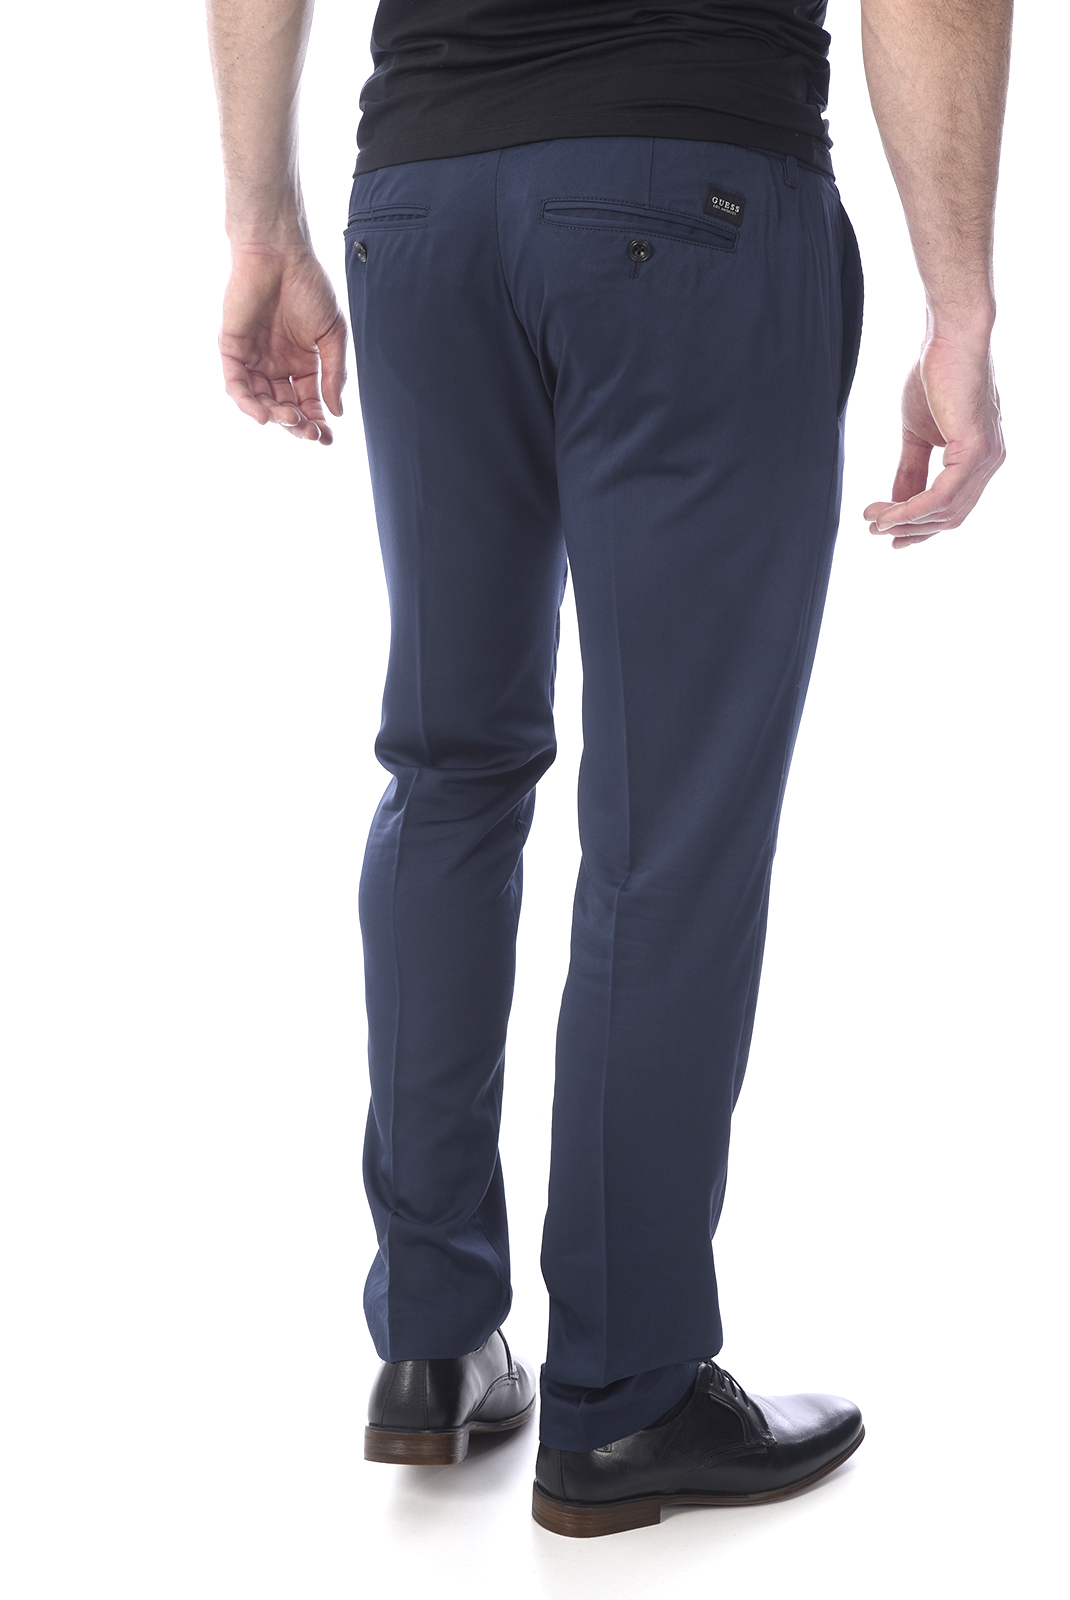 Pantalon bleu stretch homme - Guess M73b17 